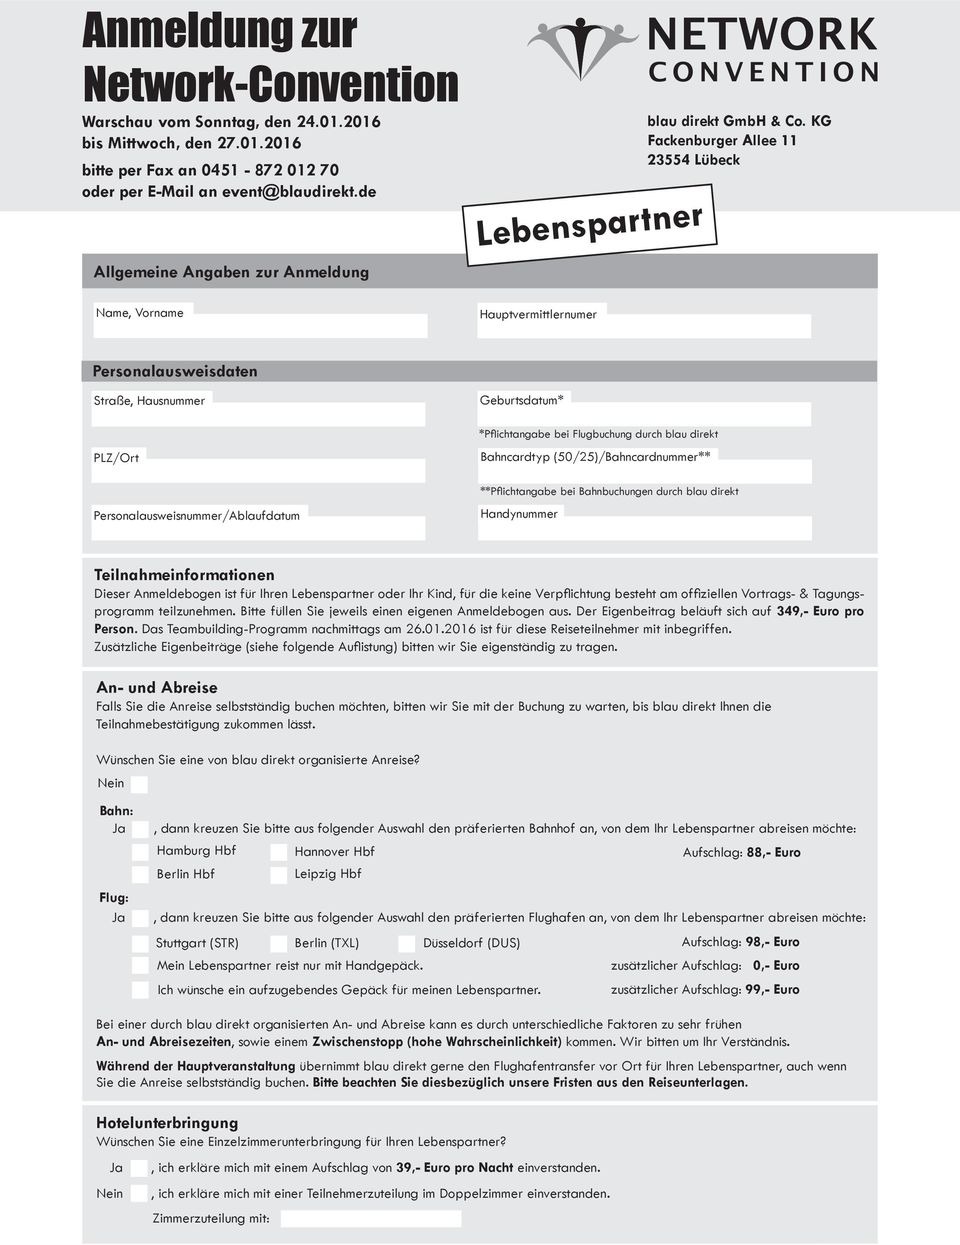 KG Fackenburger Allee 11 2554 Lübeck Personalausweisdaten PLZ/Ort Personalausweisnummer/Ablaufdatum Geburtsdatum* Handynummer Teilnahmeinformationen programm teilzunehmen.